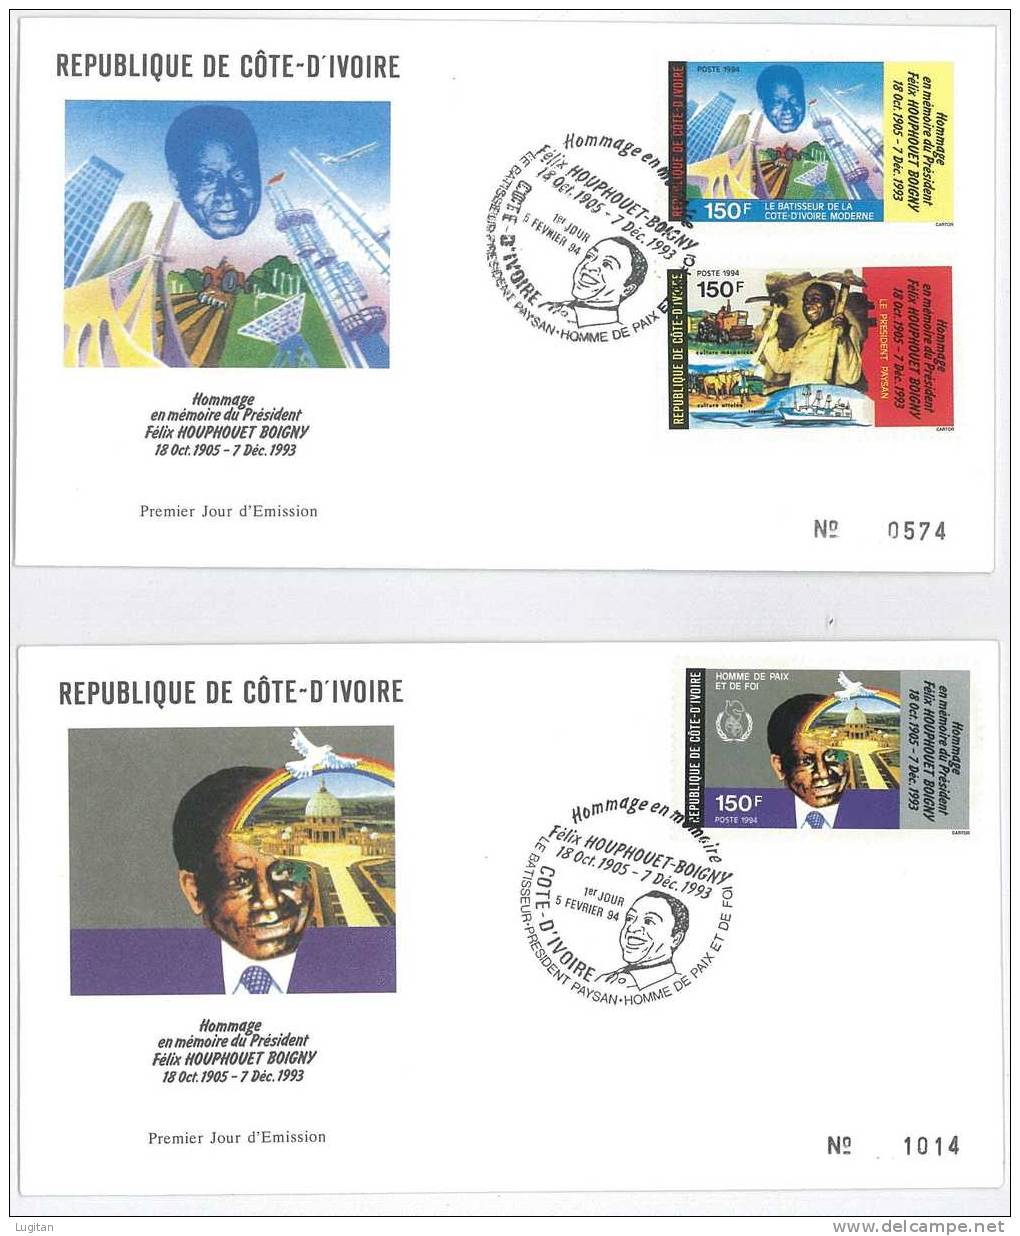 Filatelia -  FDC - FIRST DAY COVER - ANNO 1994 - OMAGGIO IN MEMORIA DEL PRESIDENTE FE'LIX HOUPHOUET BOIGNY - 1905 - 1993 - Costa D'Avorio (1960-...)